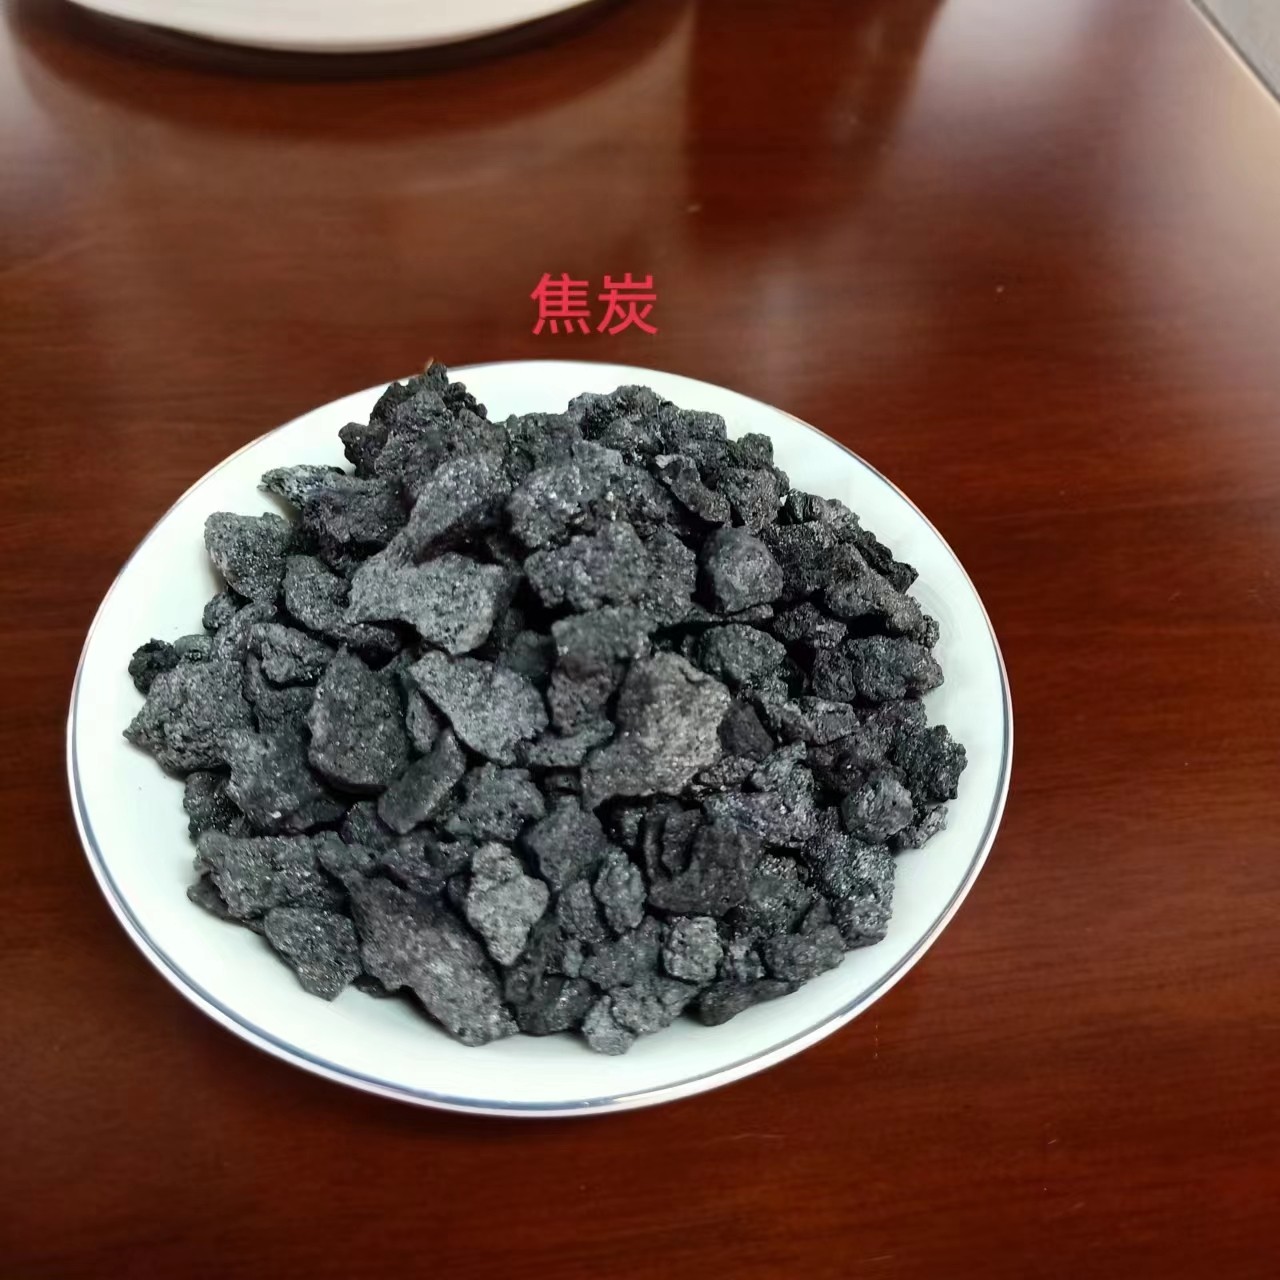 江苏省泰州市焦炭滤料是什么东西